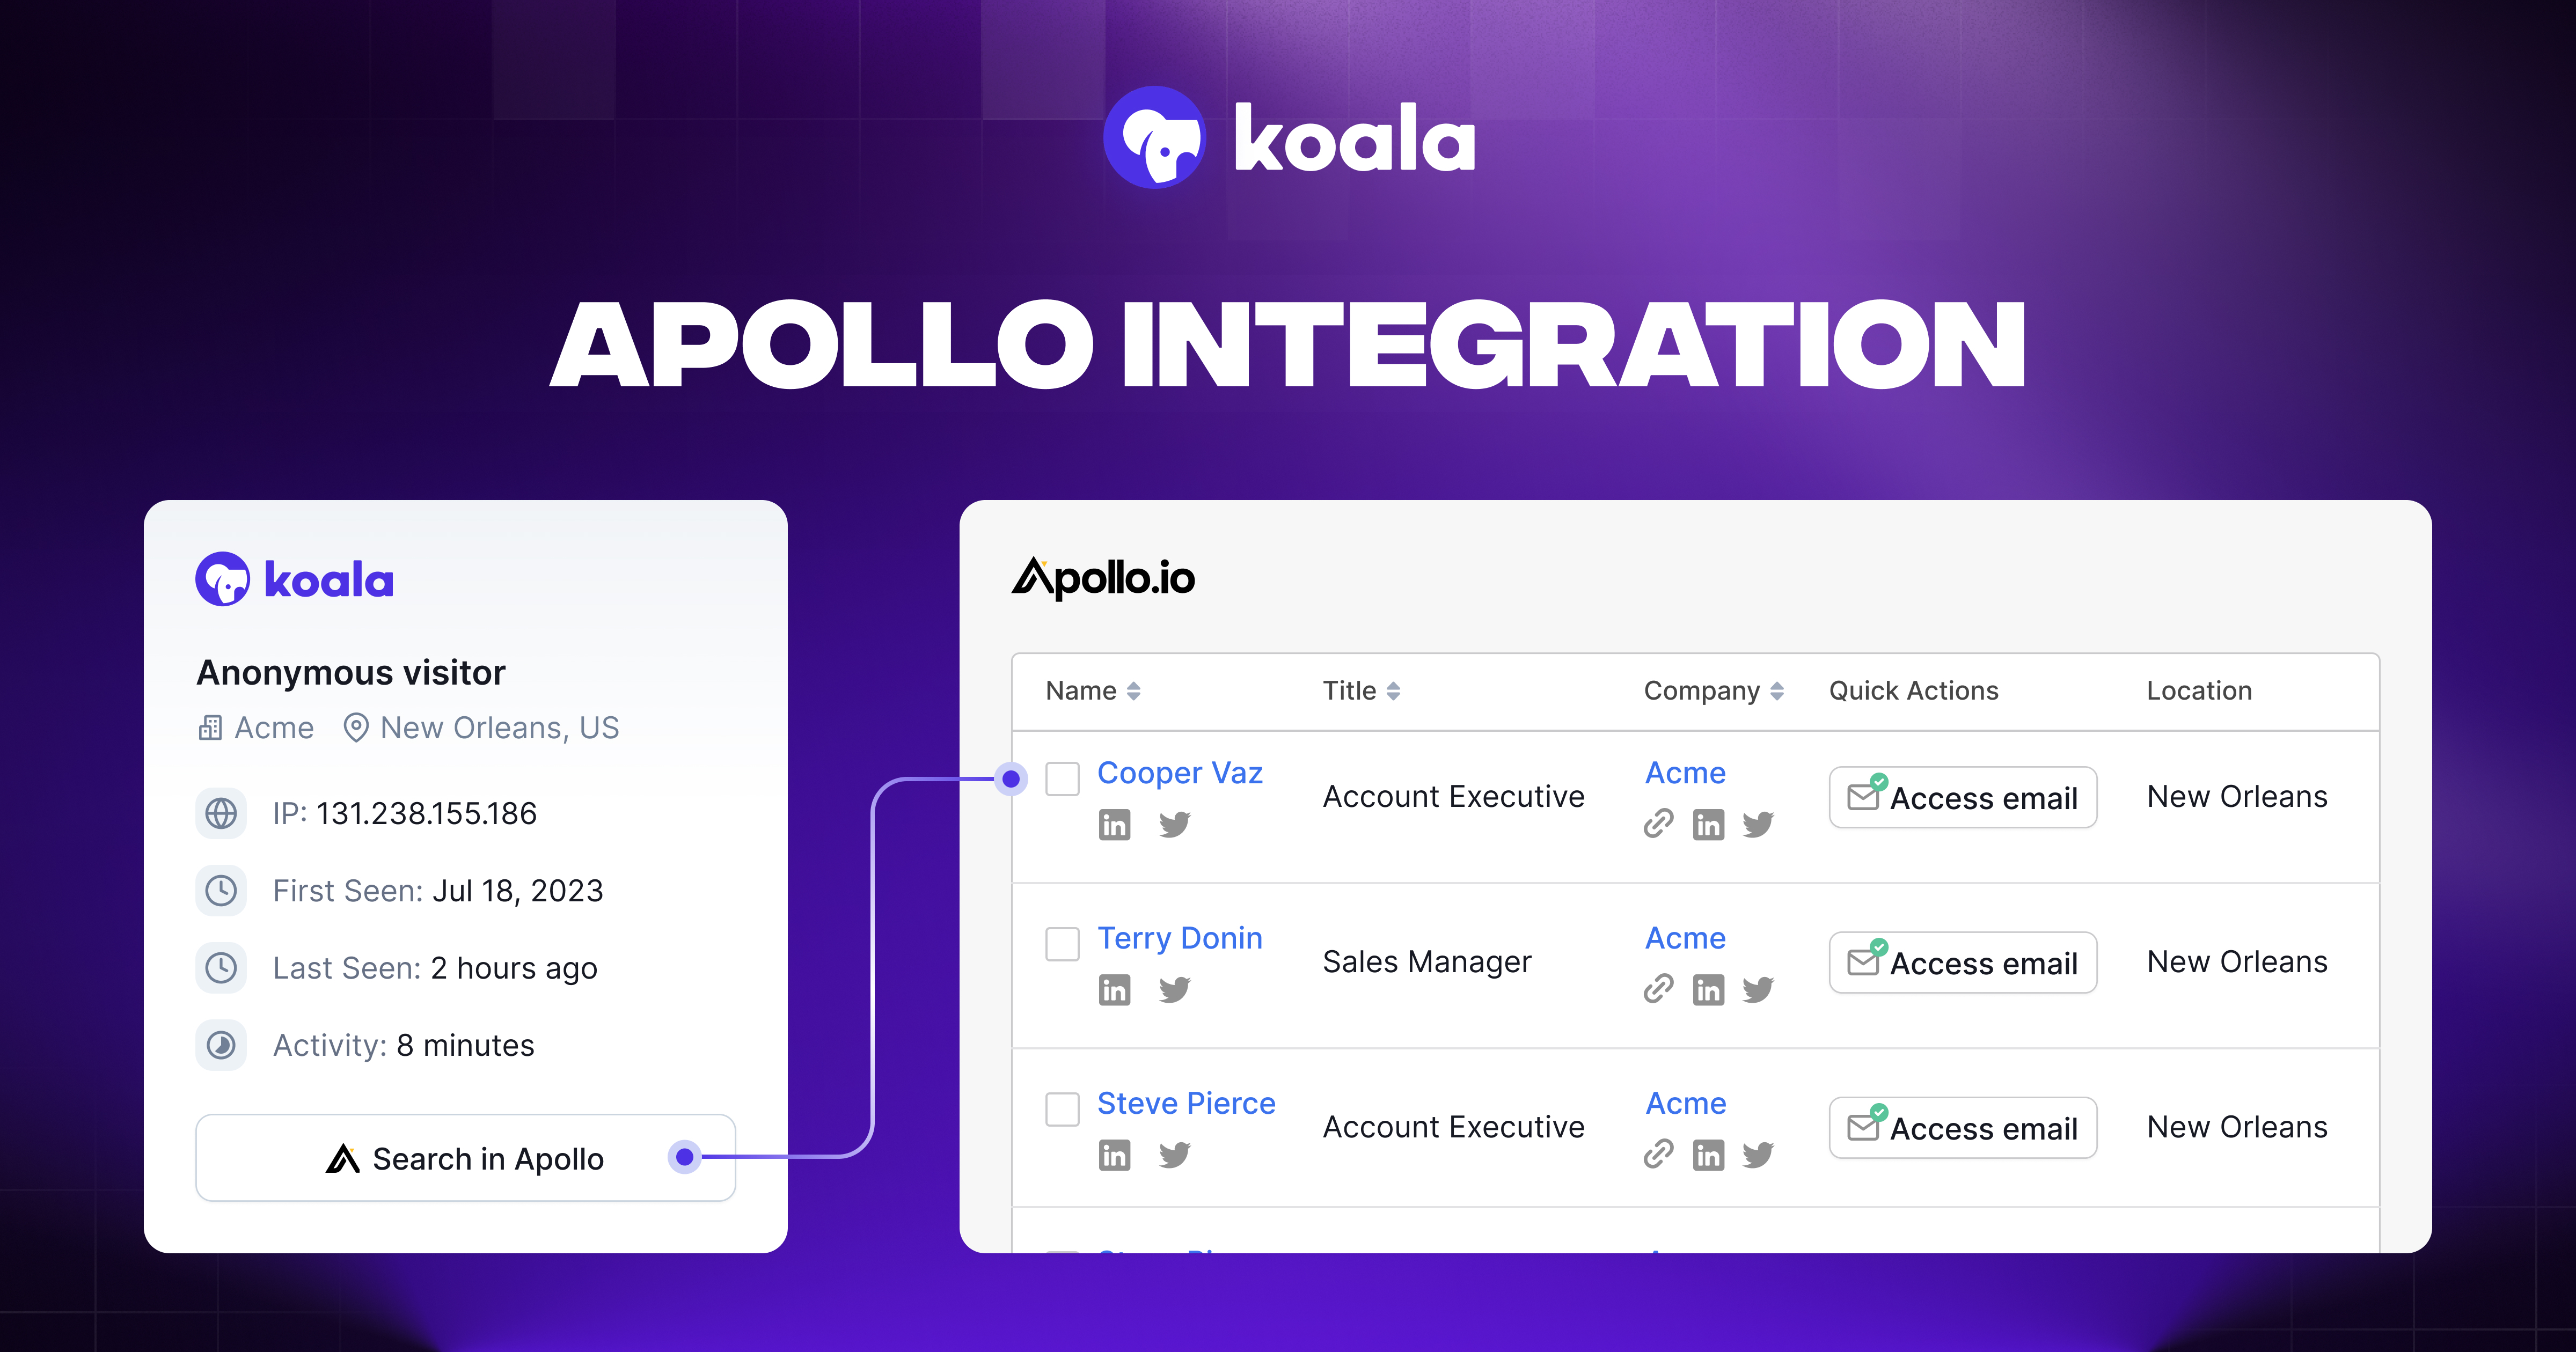 Apollo Integration